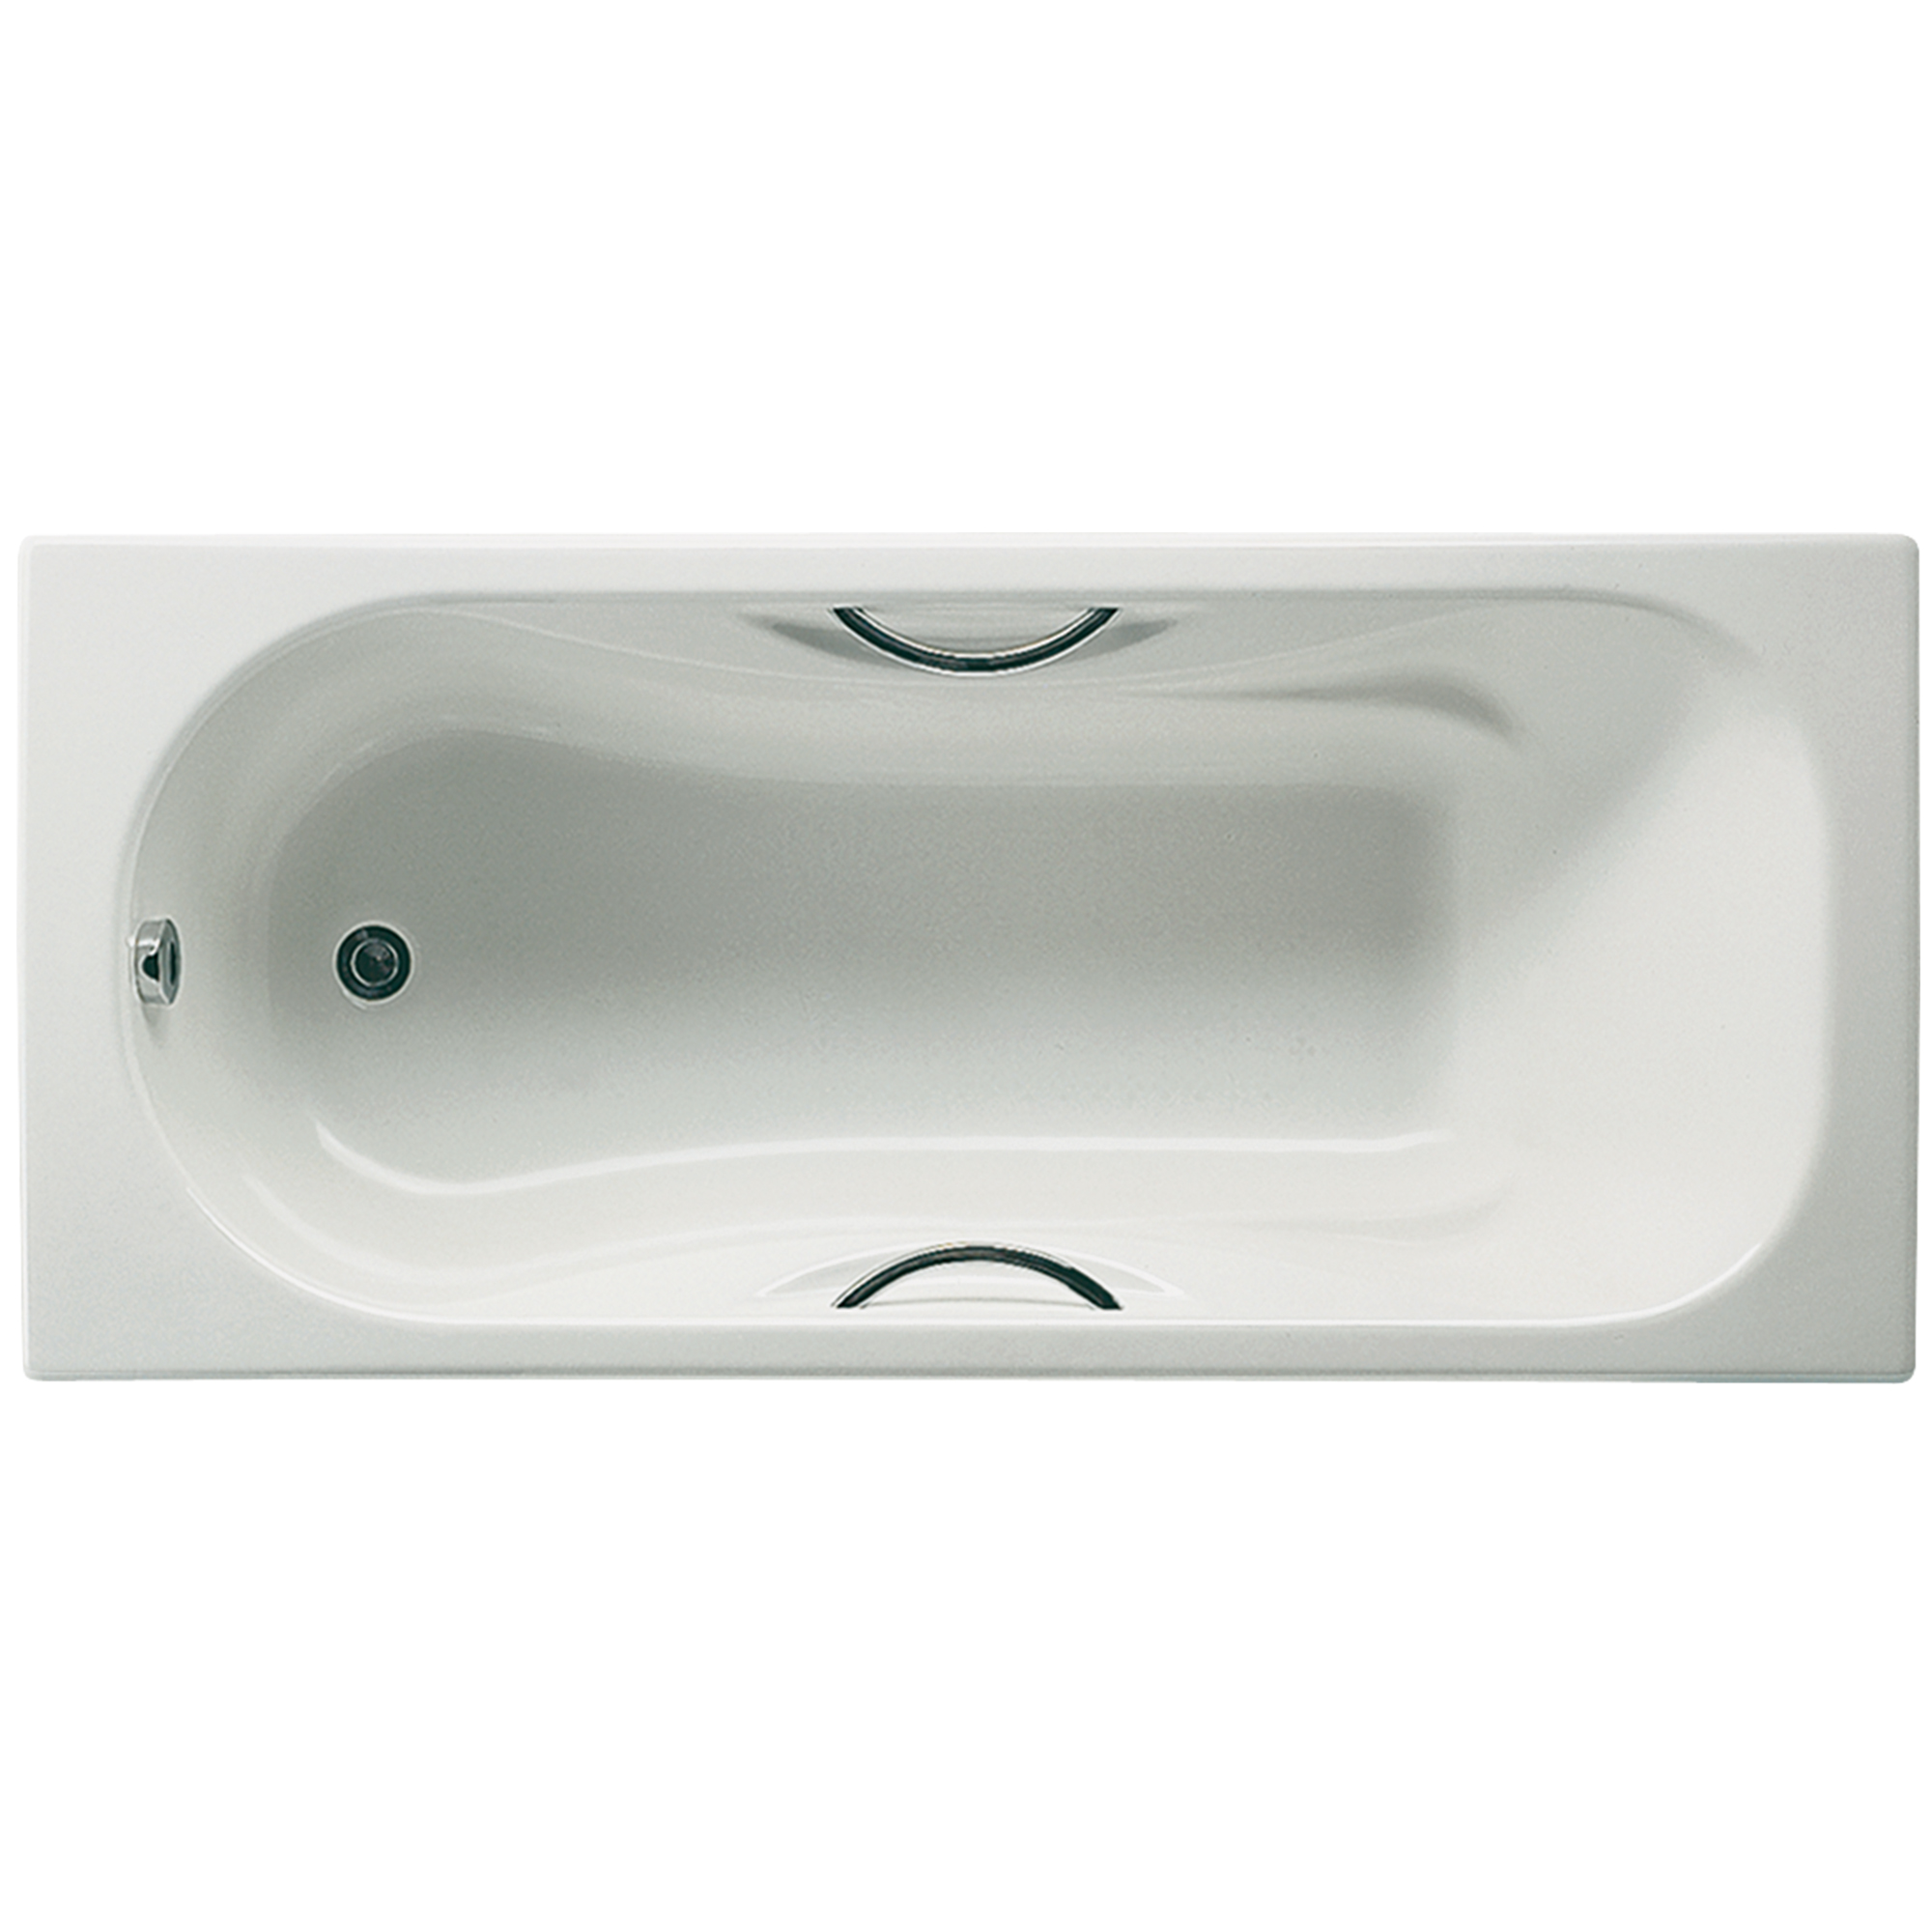 Чугунная ванна Roca Malibu 170х75, размер 170x75, цвет белый